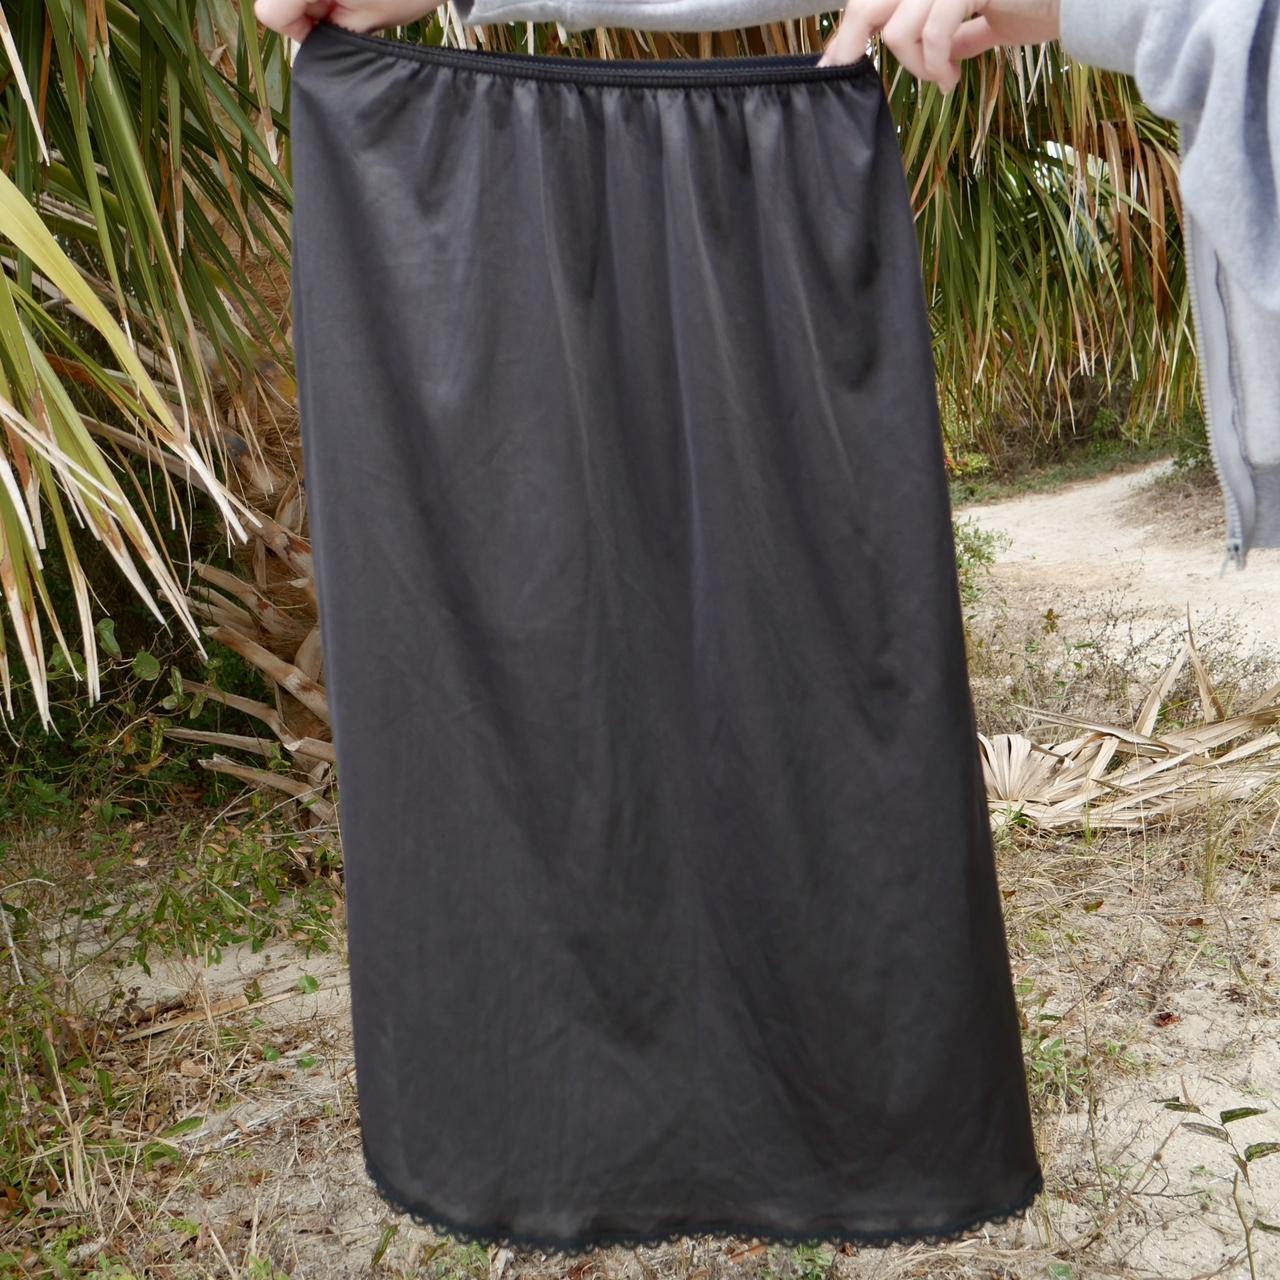 Sears Women's Black Skirt (4)